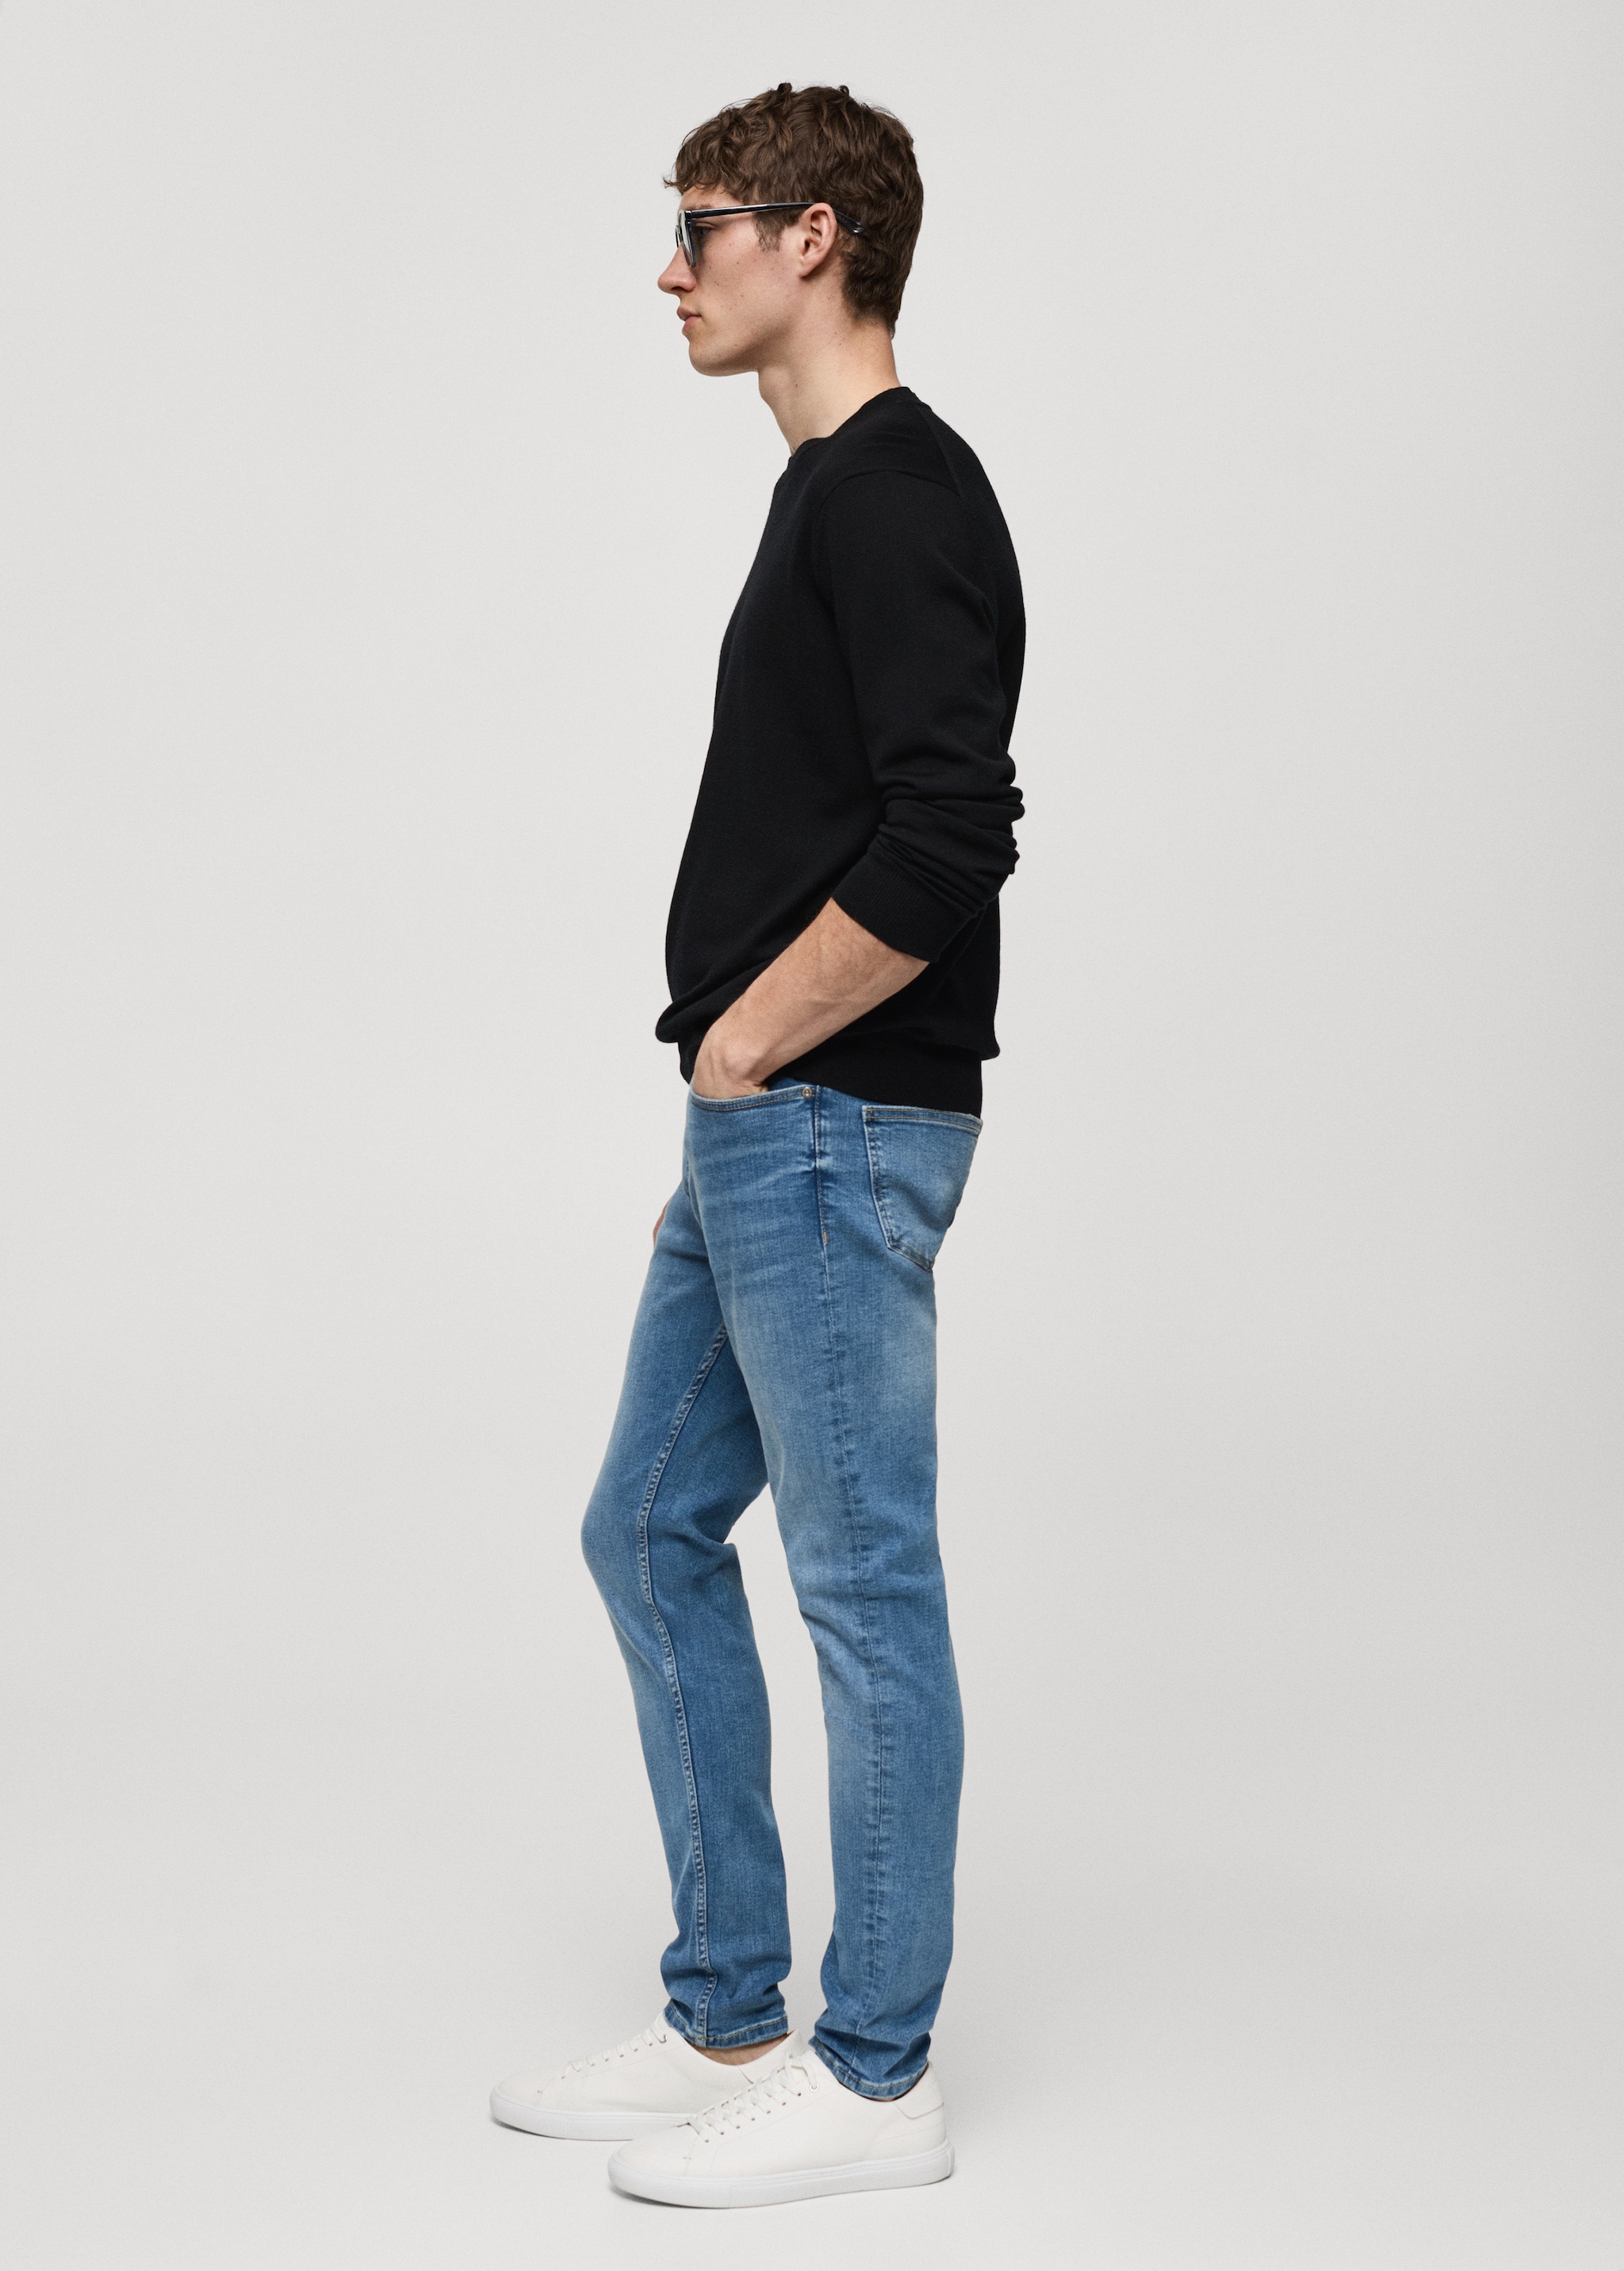 Jeans Jude skinny fit - Detalle del artículo 2